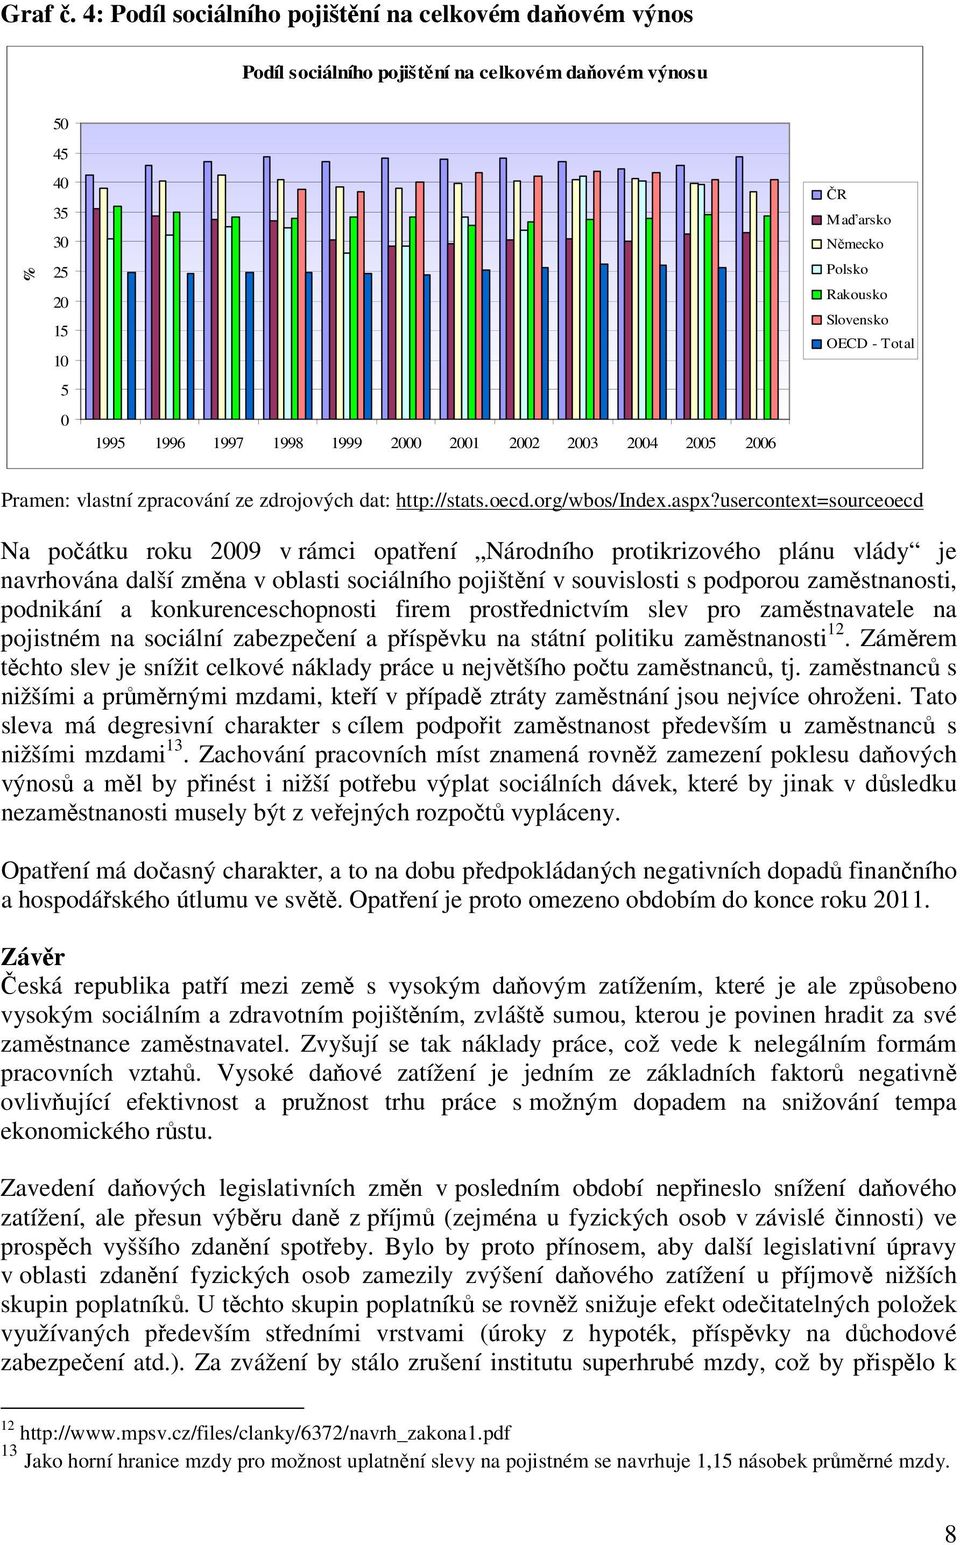 2006 ČR Maďarsko Německo Polsko Rakousko Slovensko OECD - Total Pramen: vlastní zpracování ze zdrojových dat: http://stats.oecd.org/wbos/index.aspx?